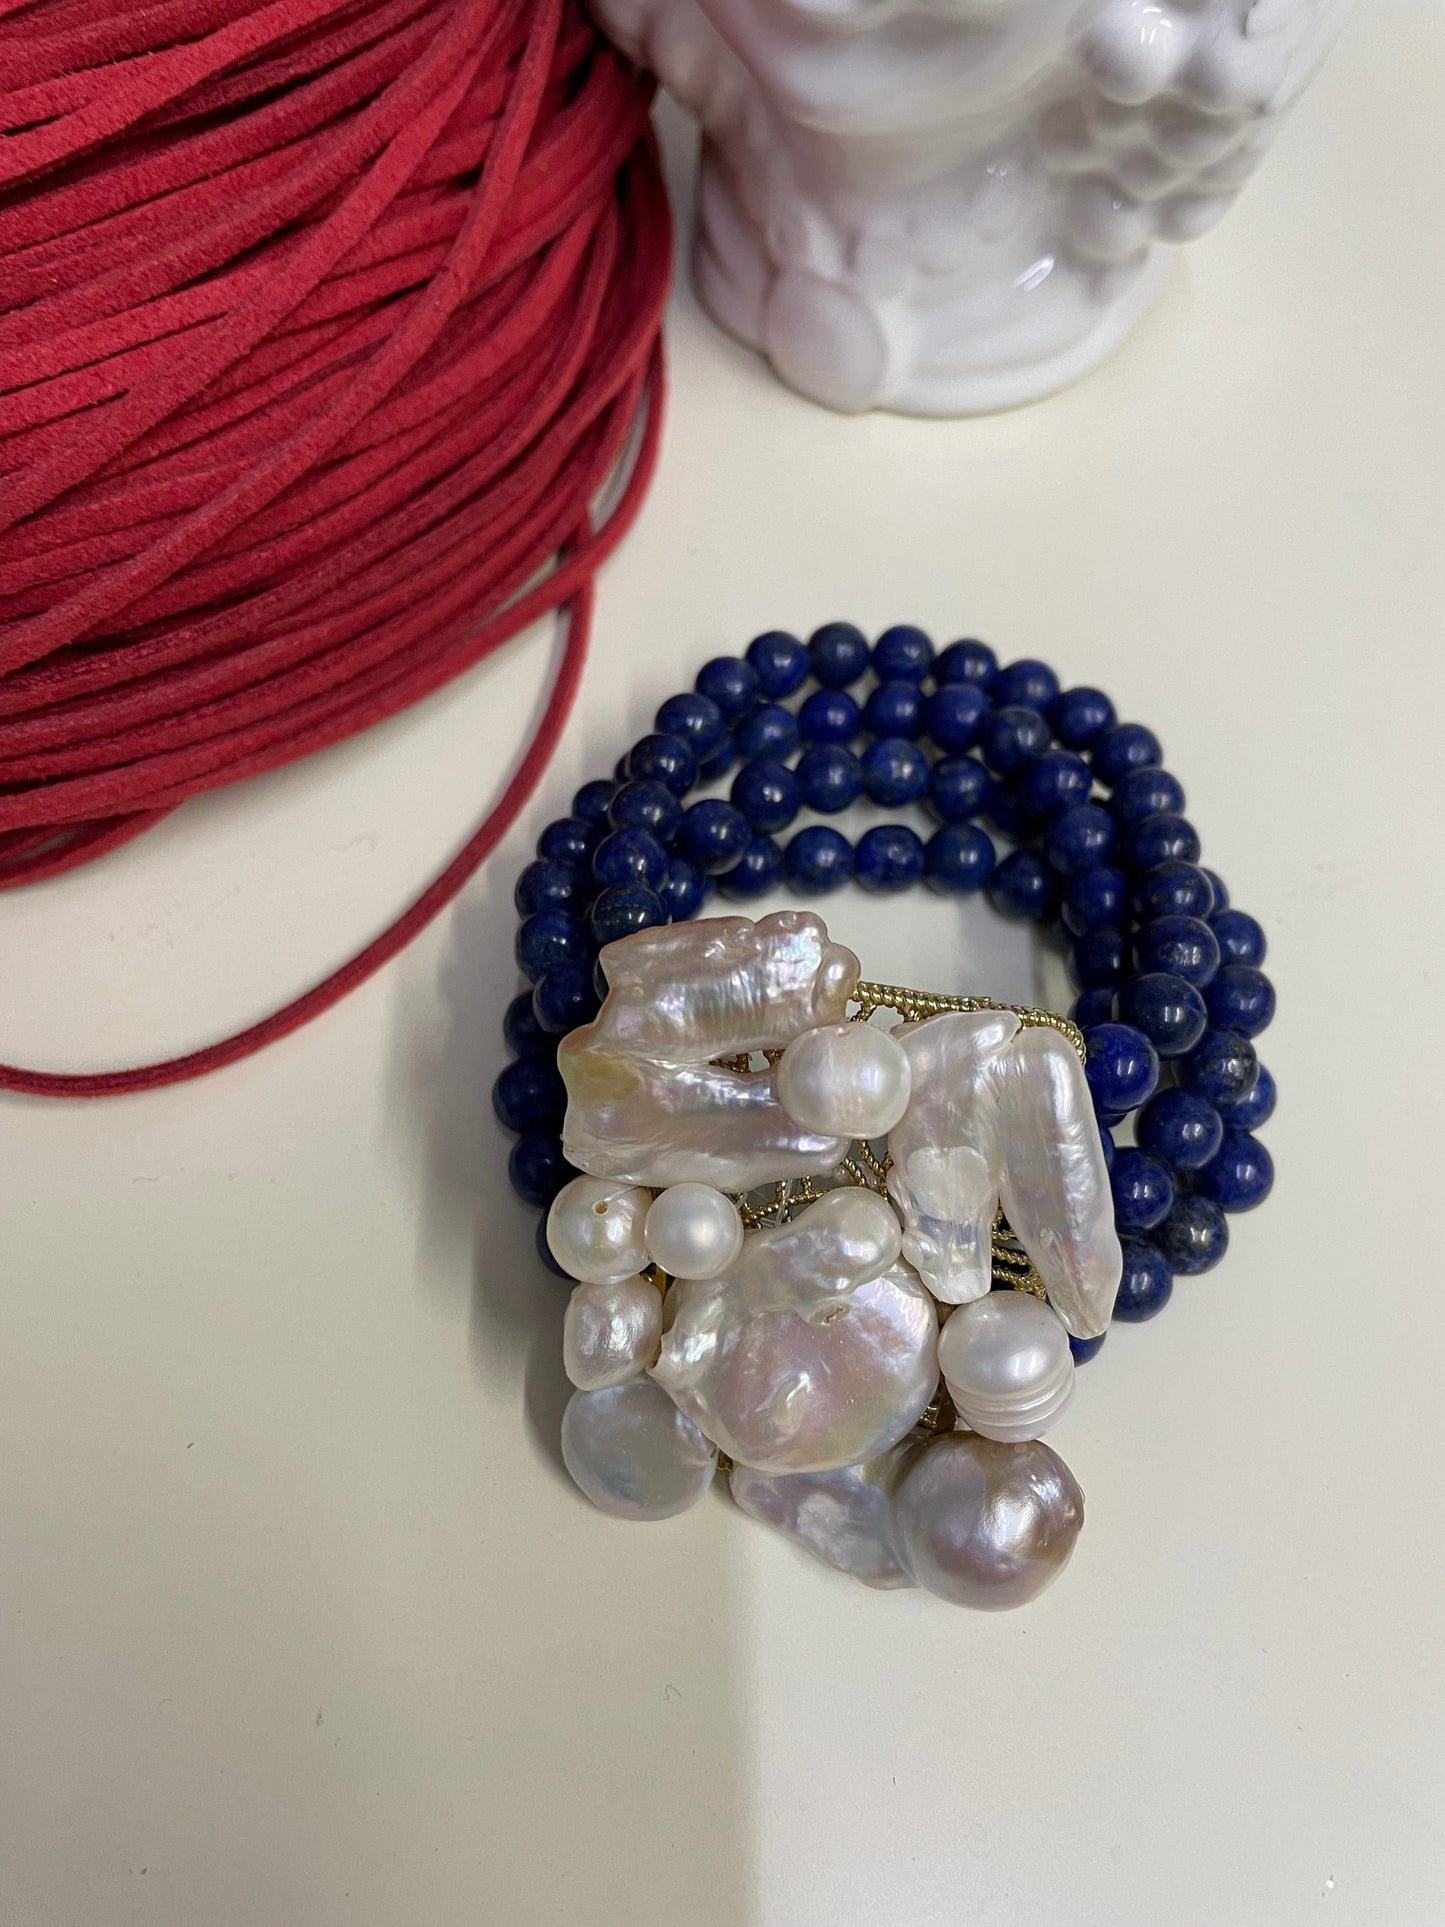 Braccialetto elastico, lapislazzuli, perle barocche irregolari di varie dimensioni. regalo per lei.